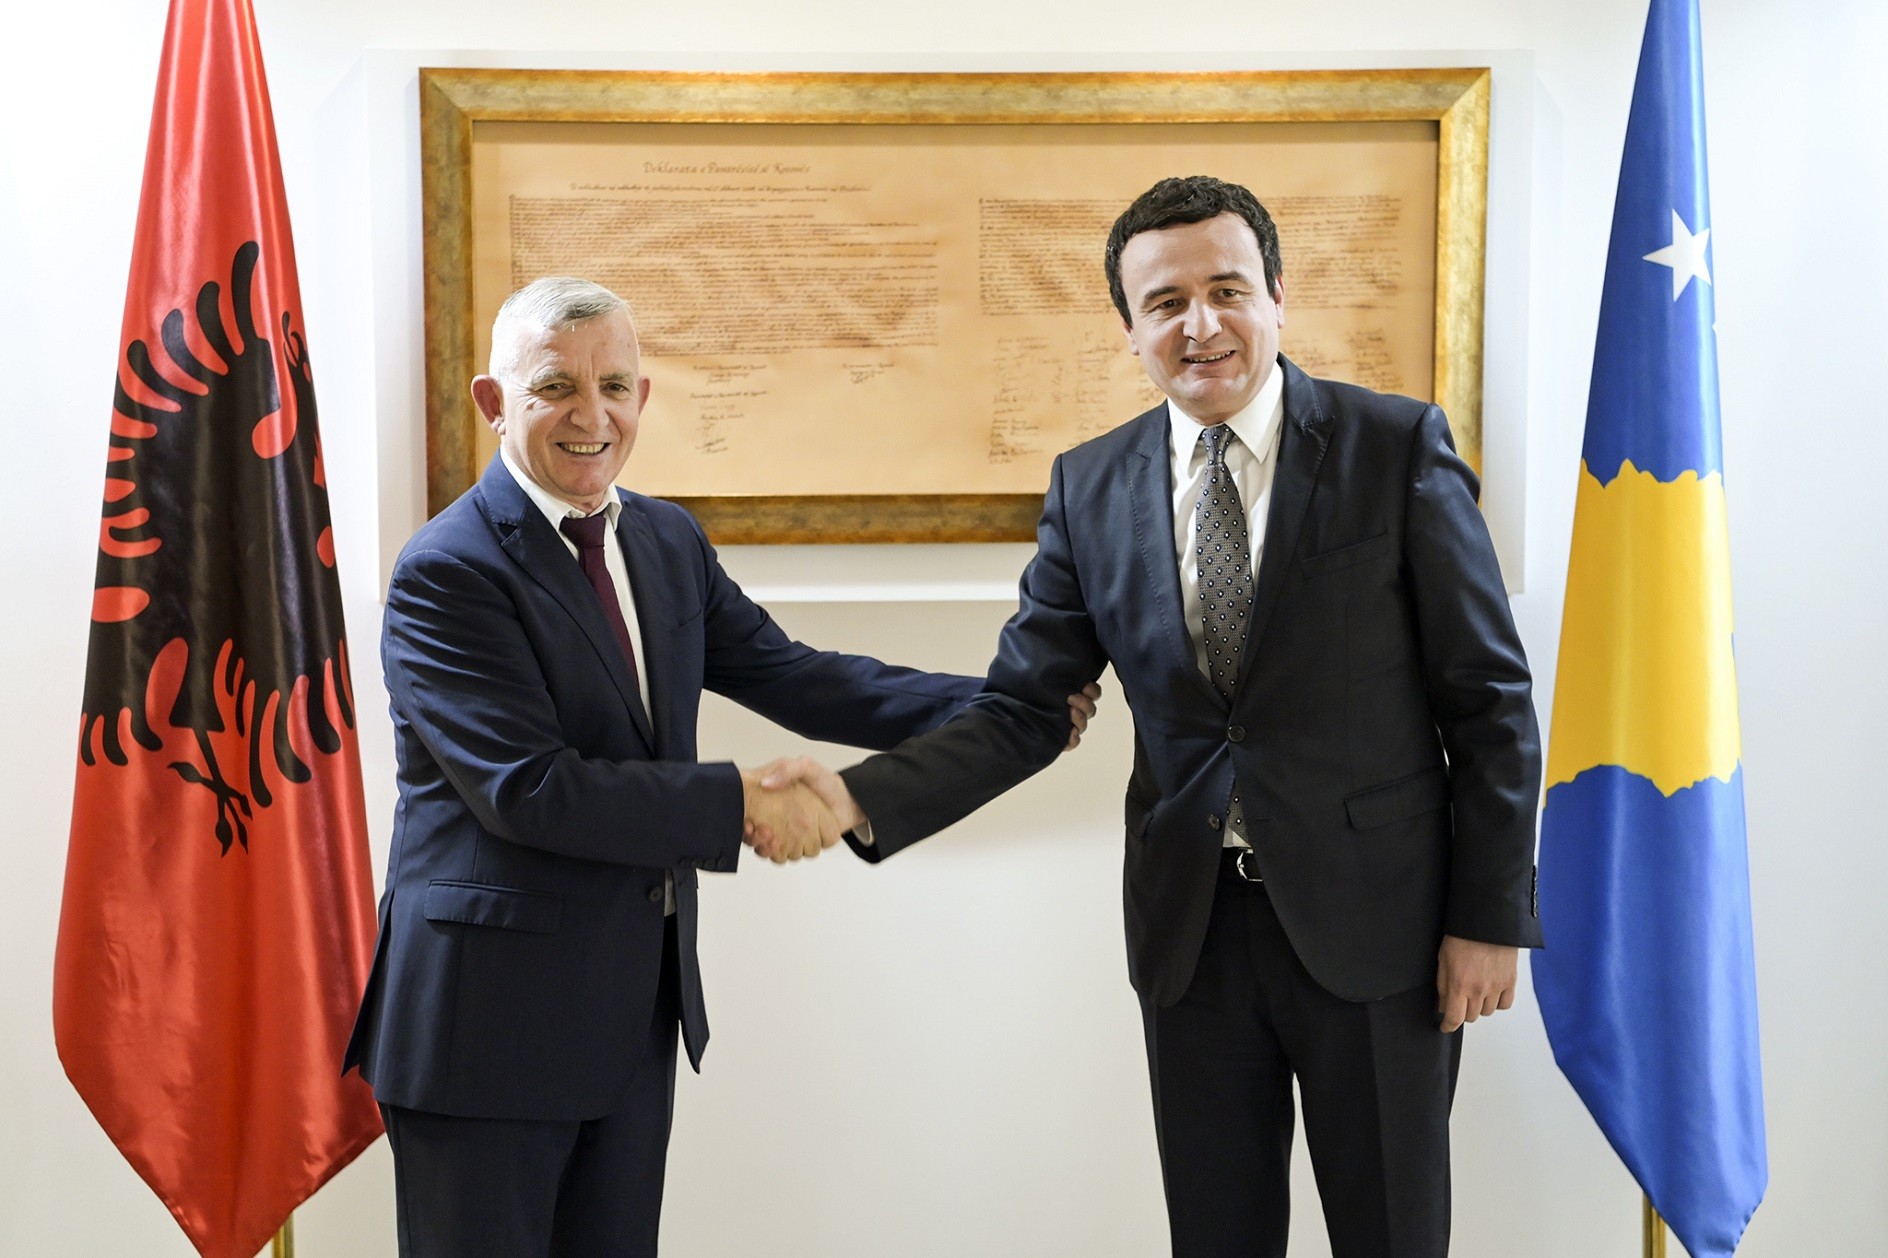 Vizitën e parë zyrtare Kryeministri Kurti do ta bëjë në Shqipëri